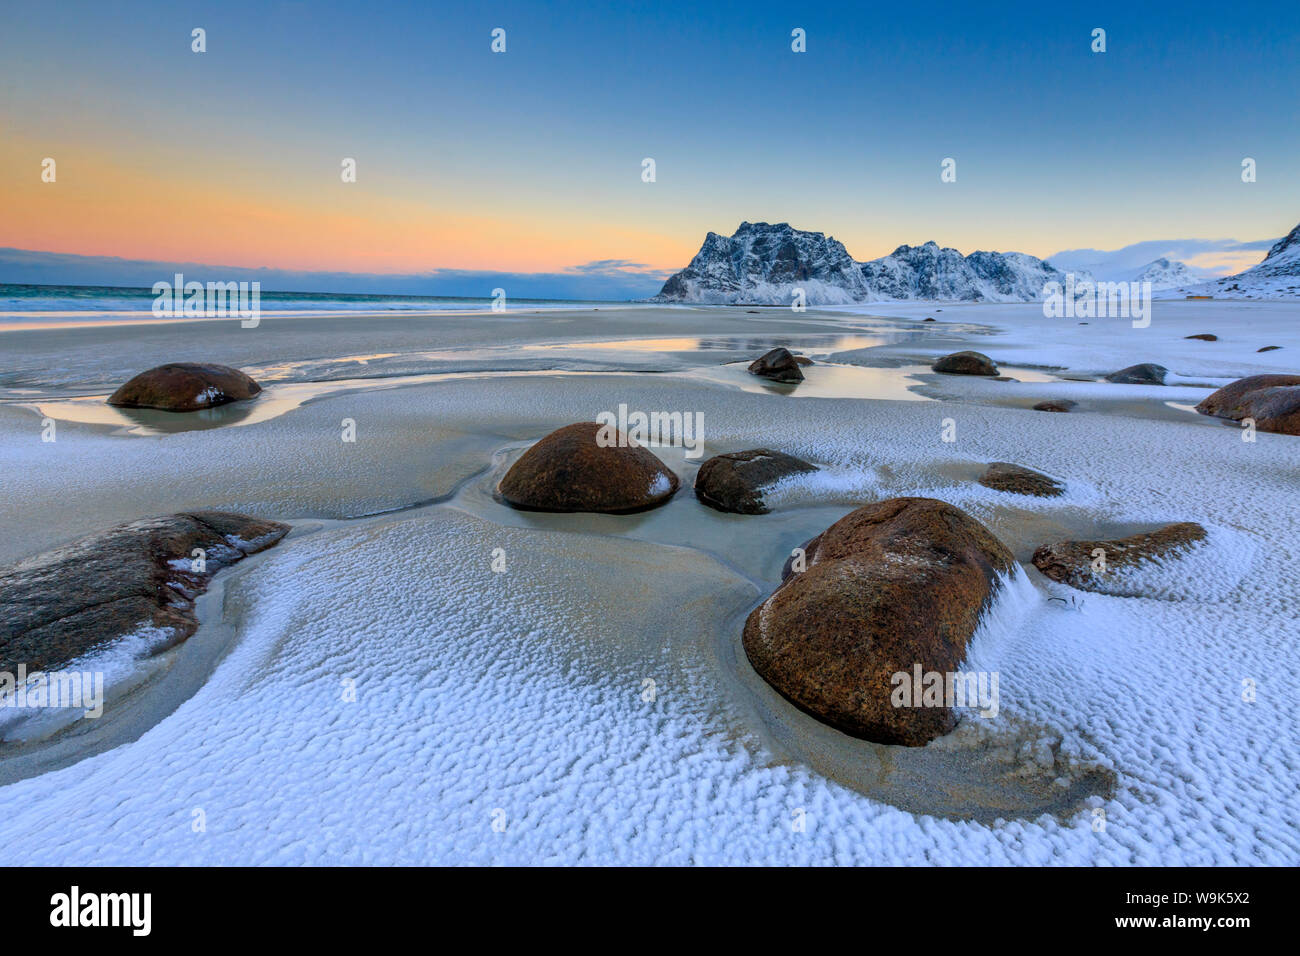 L'aube éclaire les rochers façonnés par le vent entouré de neige fraîche, Uttakleiv, îles Lofoten, Norvège, de l'Arctique, Scandinavie, Europe Banque D'Images